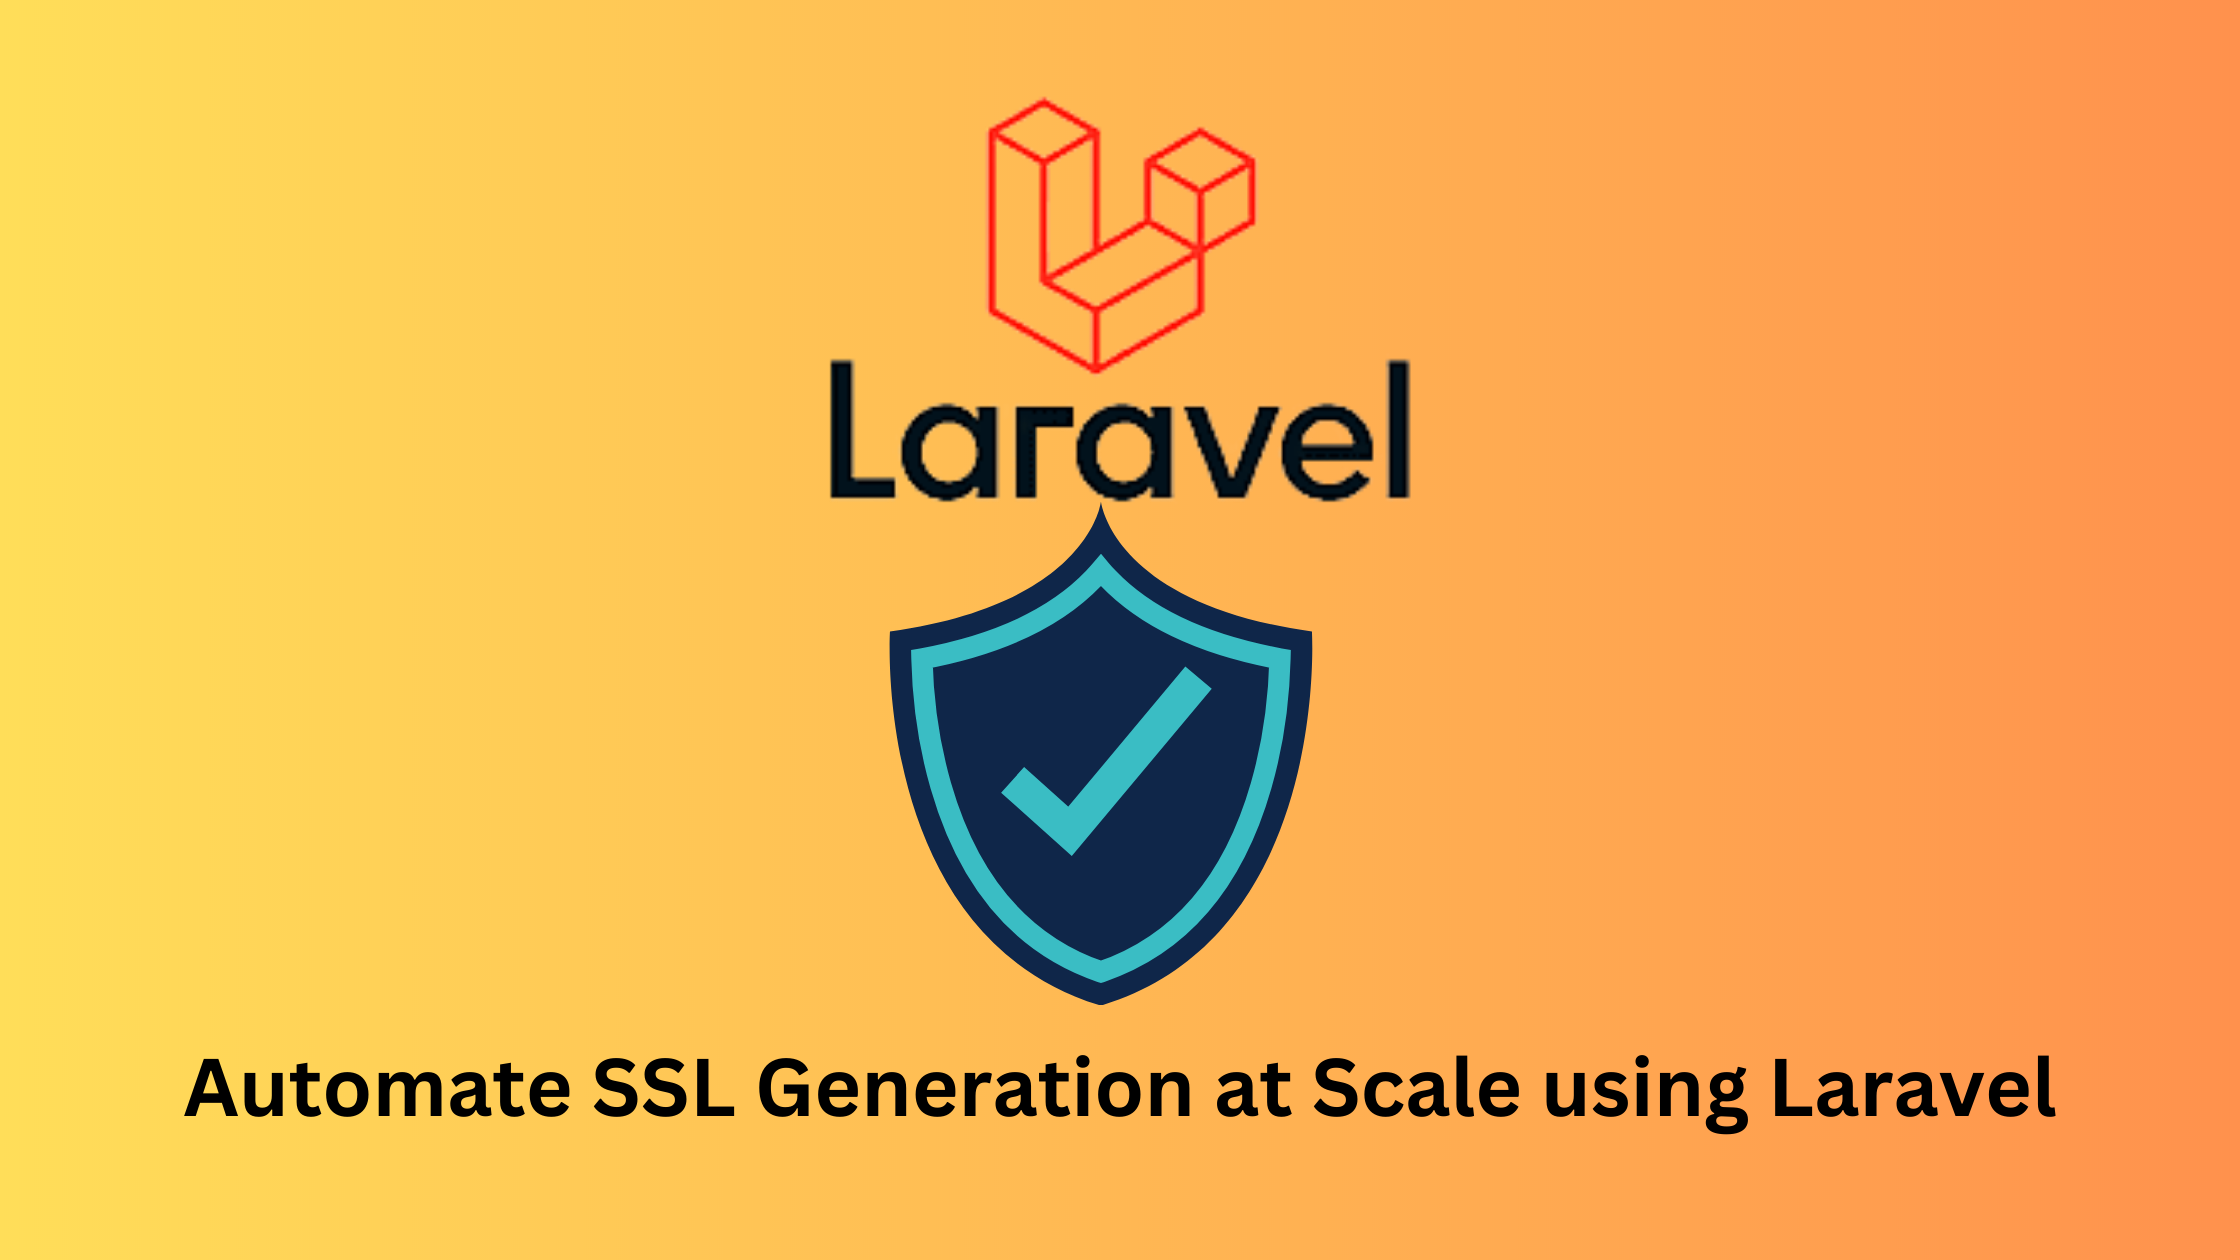 Як Автоматизувати Генерацію Та Оновлення Ssl За Допомогою Laravel